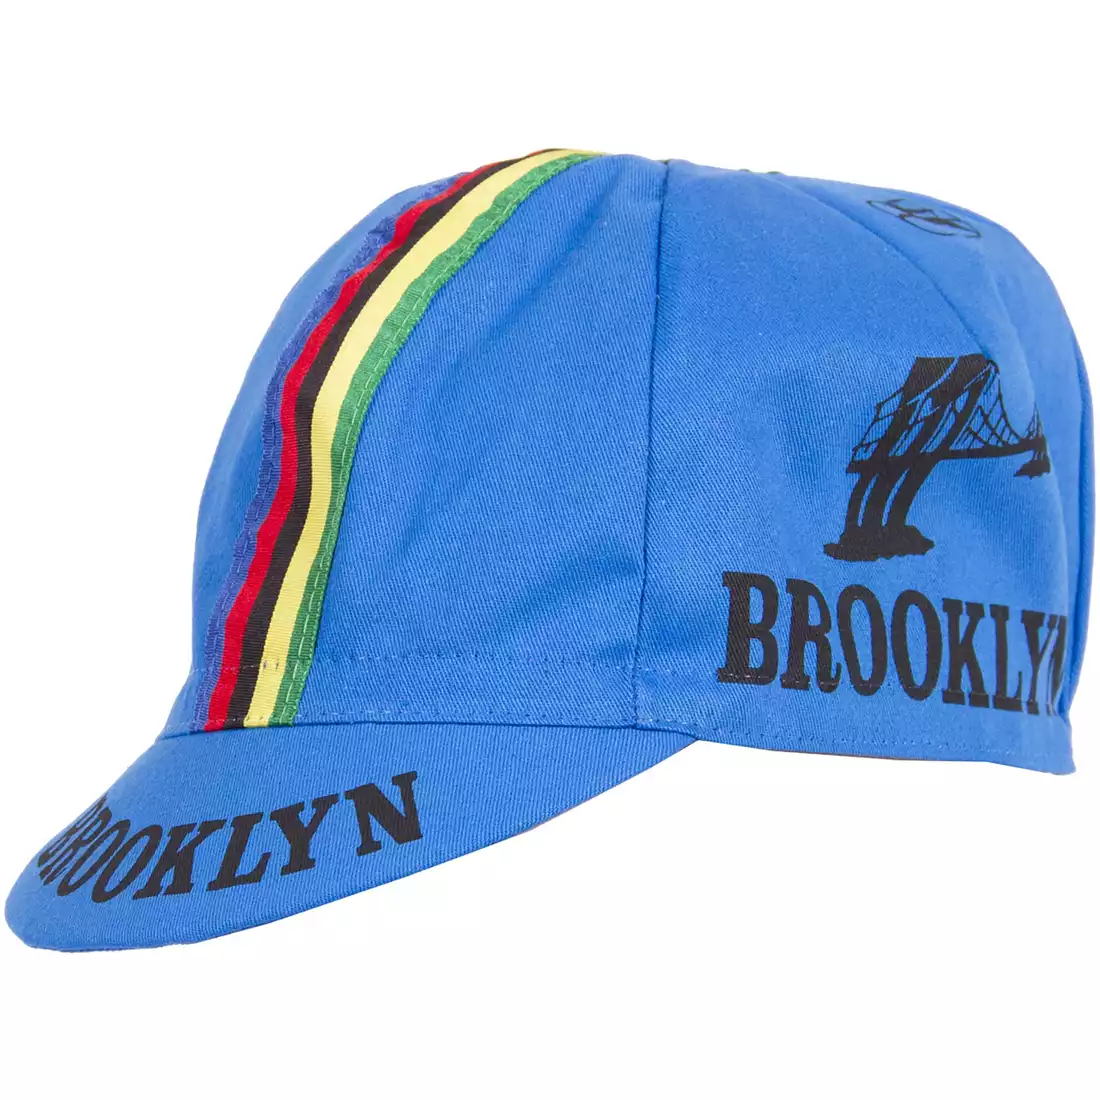 GIORDANA SS18 czapeczka kolarska - Brooklyn -  Azzurro Blue w/ Stripe tape  GI-S6-COCA-BROK-AZZU one size